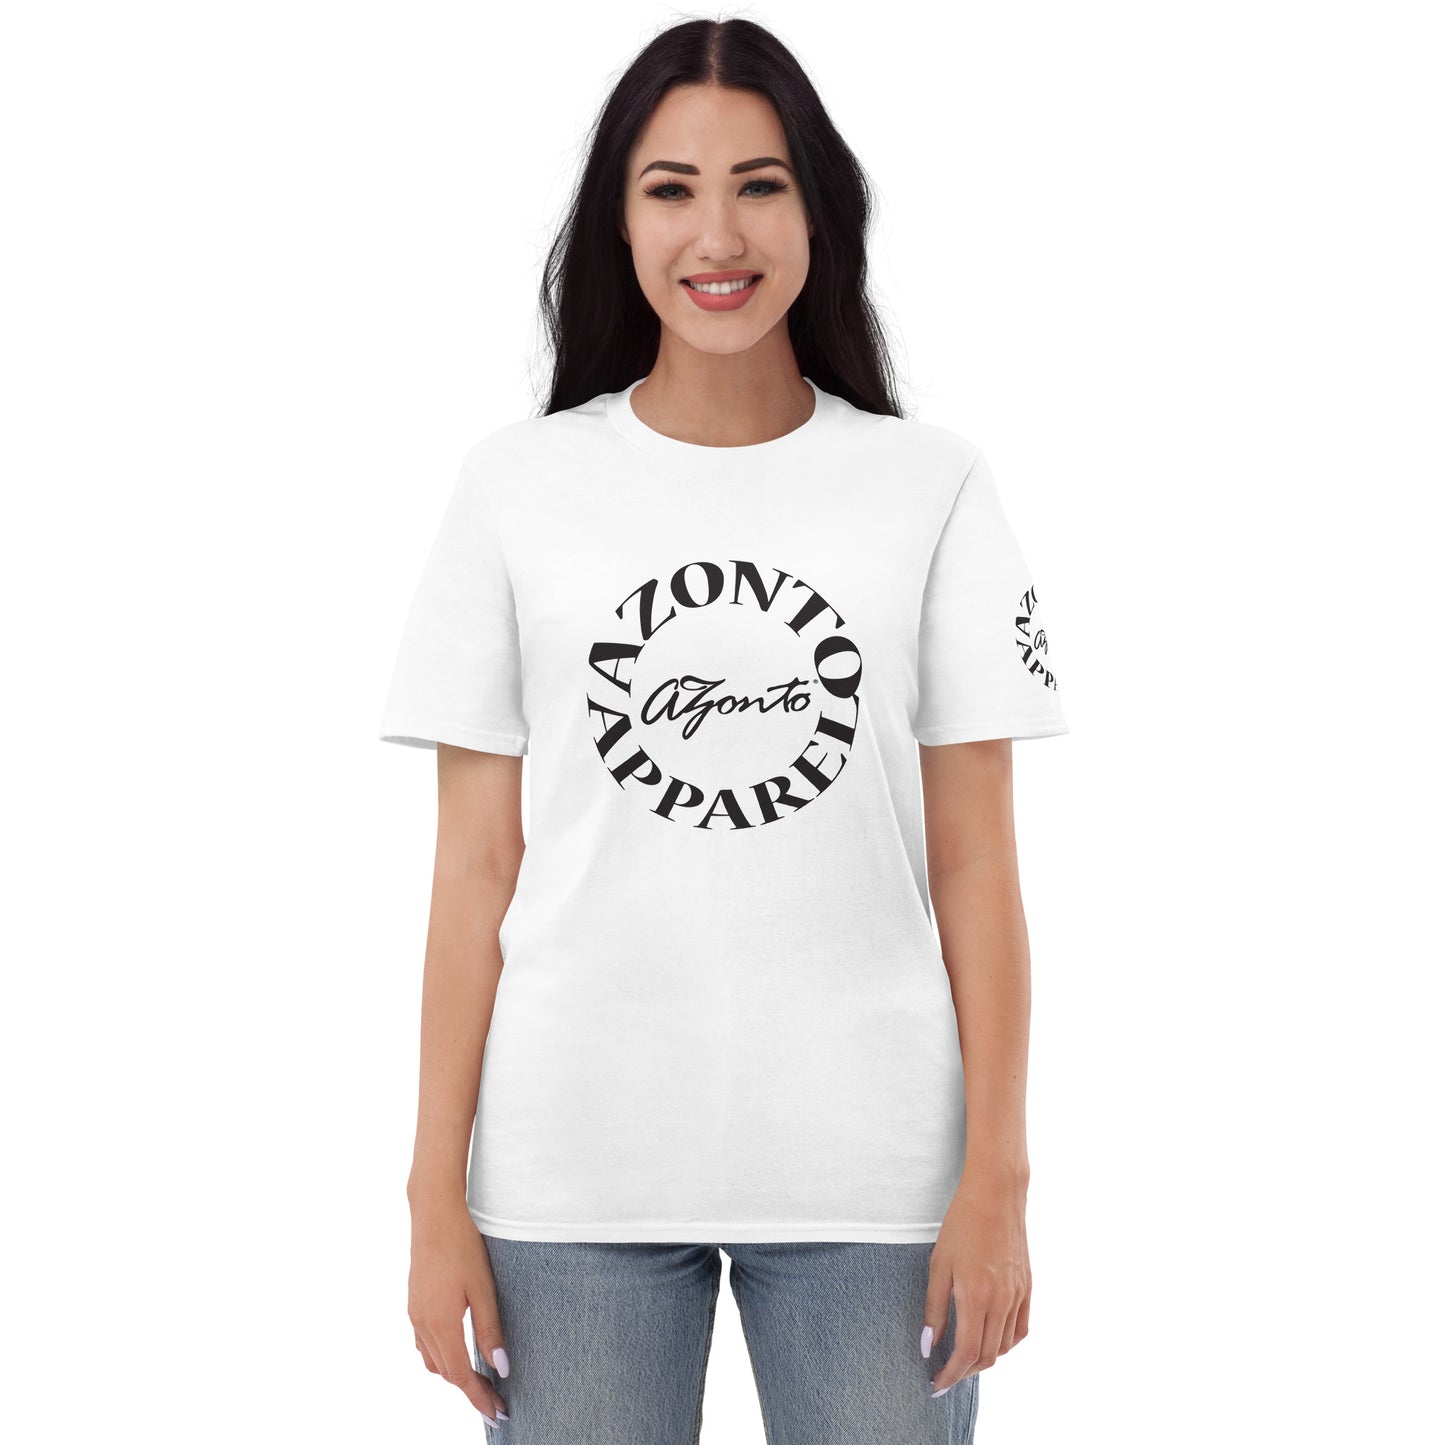 AZONTO Short-Sleeve T-Shirt